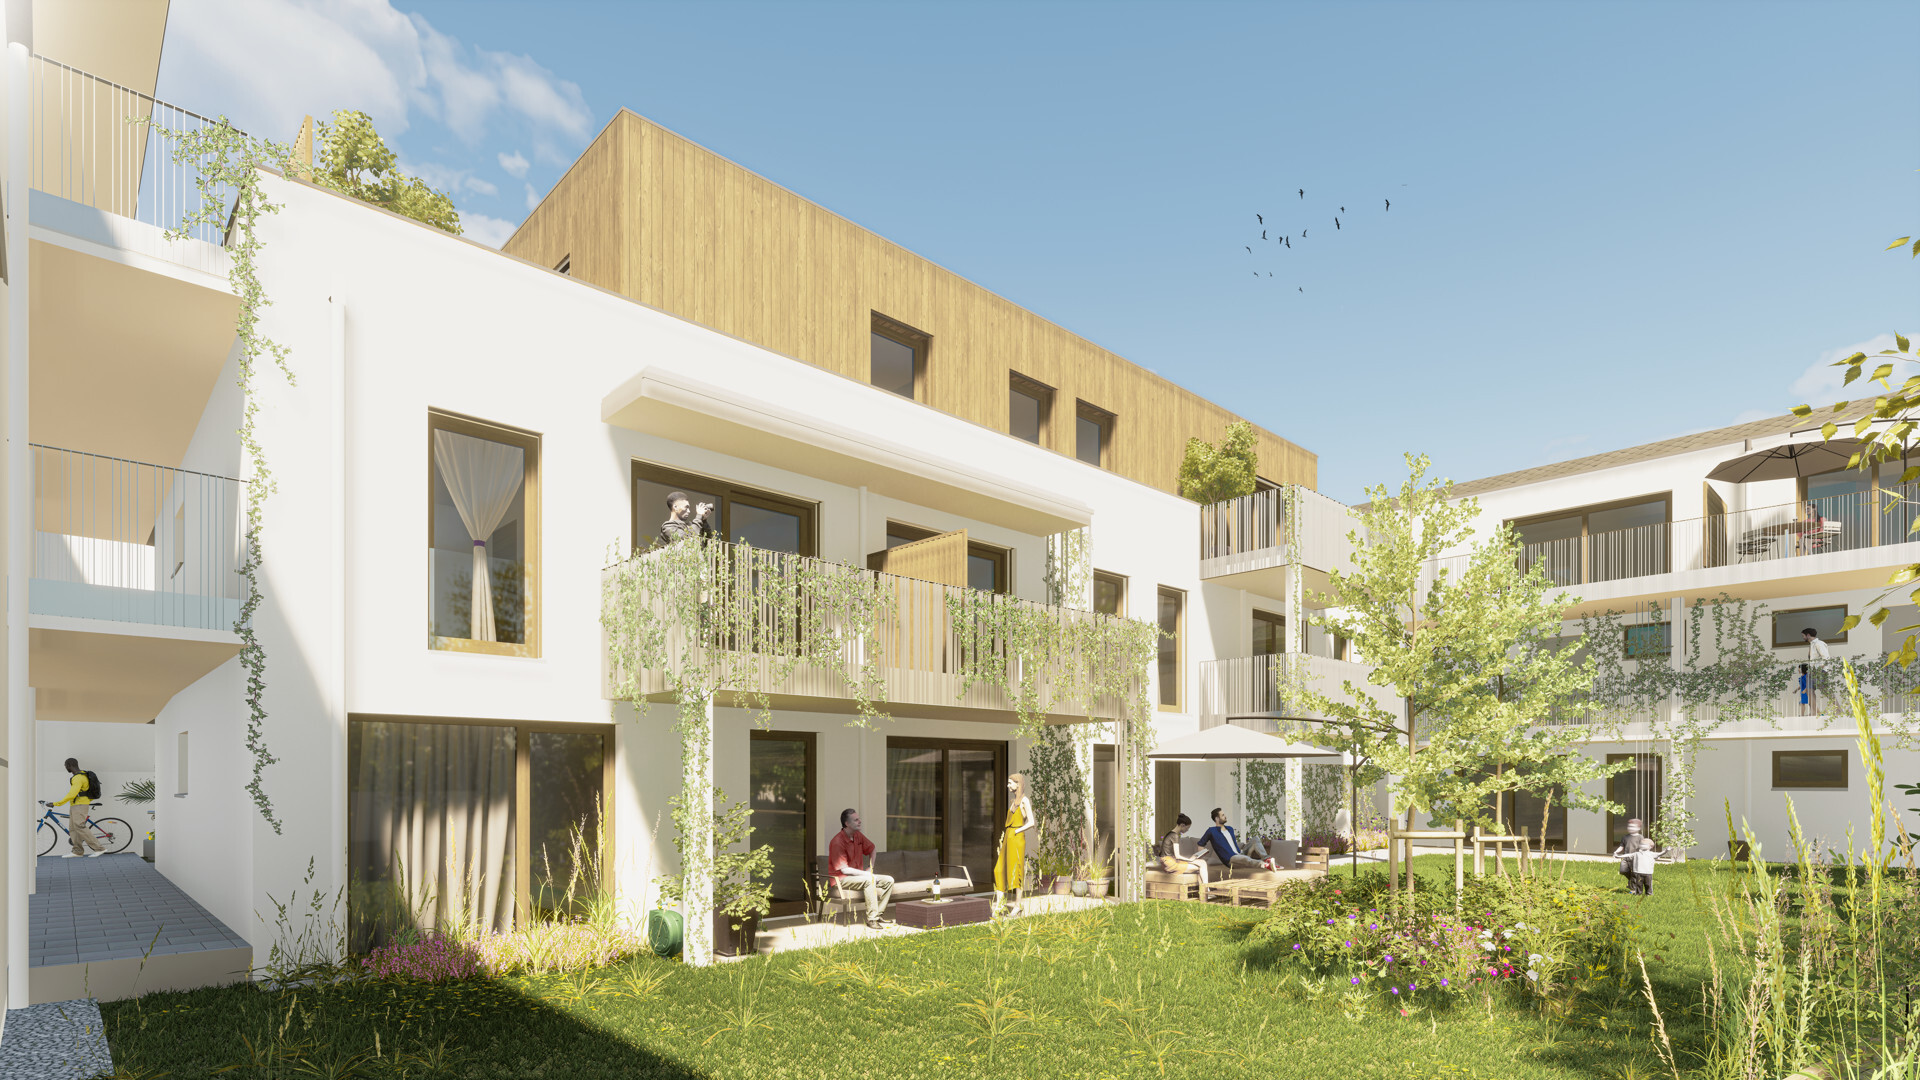 Balkonwohnung in Ruhelage - naturnahes Wohnen mit Gartenanteil - zu kaufen in 2340 Mödling